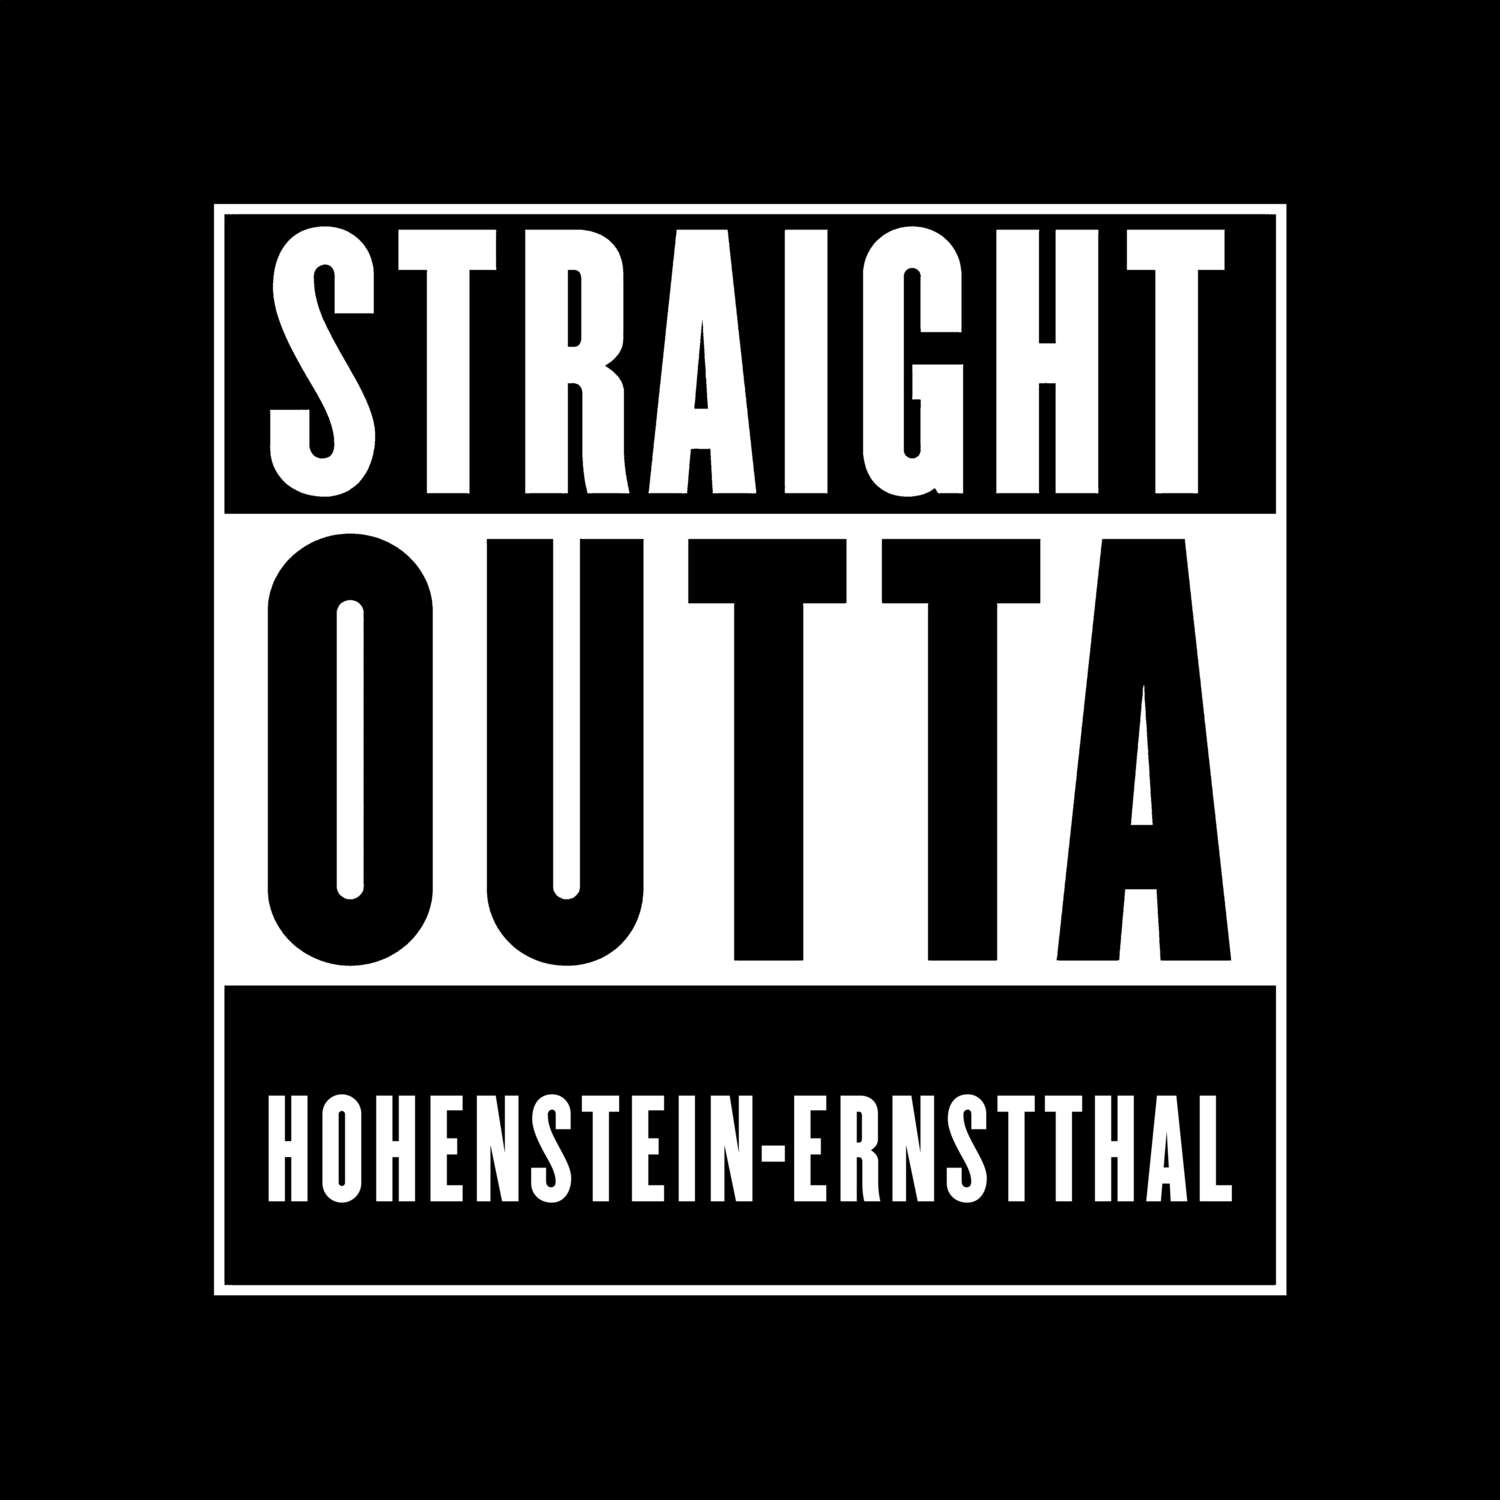 Hohenstein-Ernstthal T-Shirt »Straight Outta«